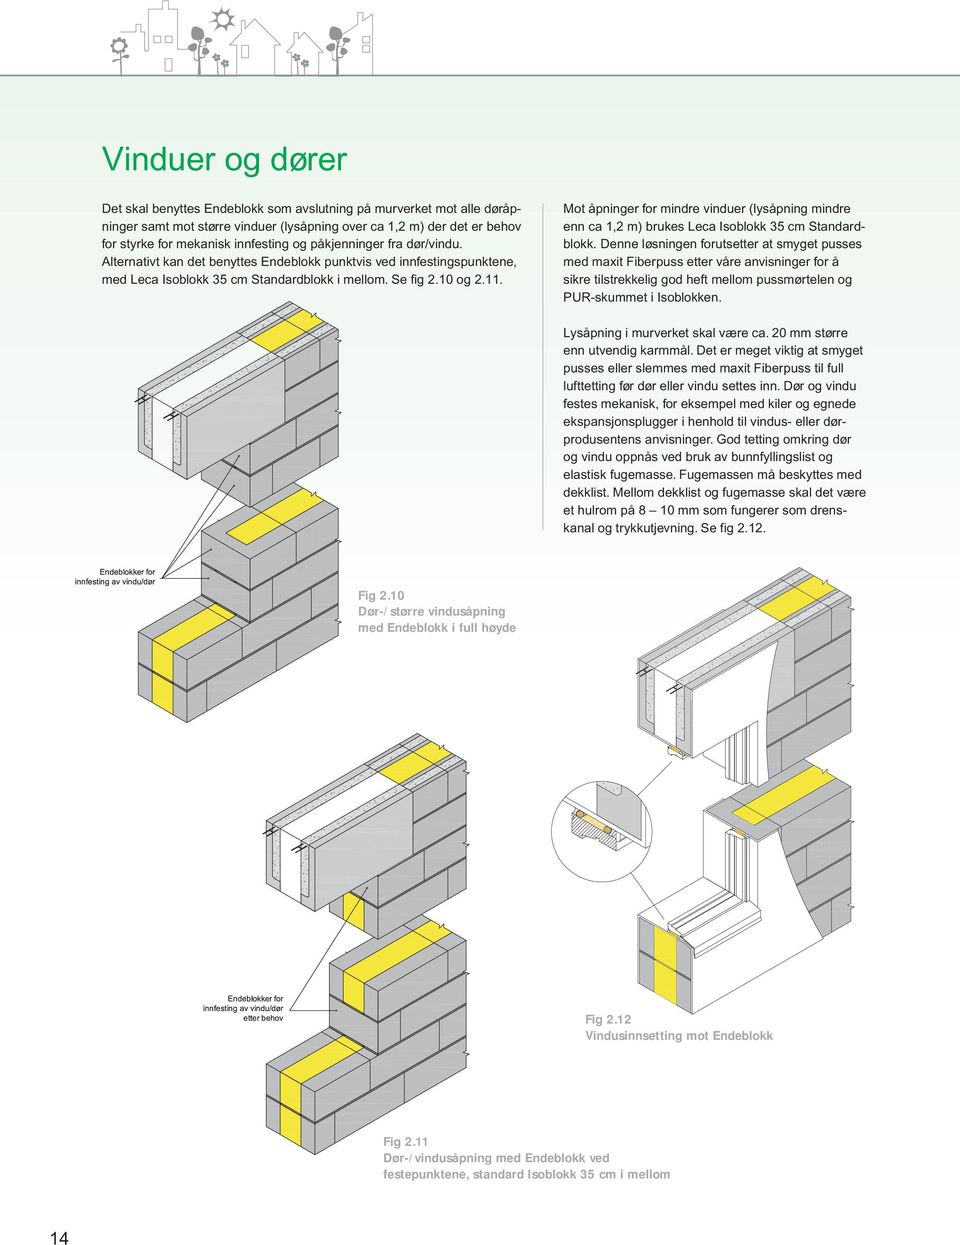 Mot åpninger for mindre vinduer (lysåpning mindre enn ca 1,2 m) brukes Leca Isoblokk 35 cm Standardblokk.